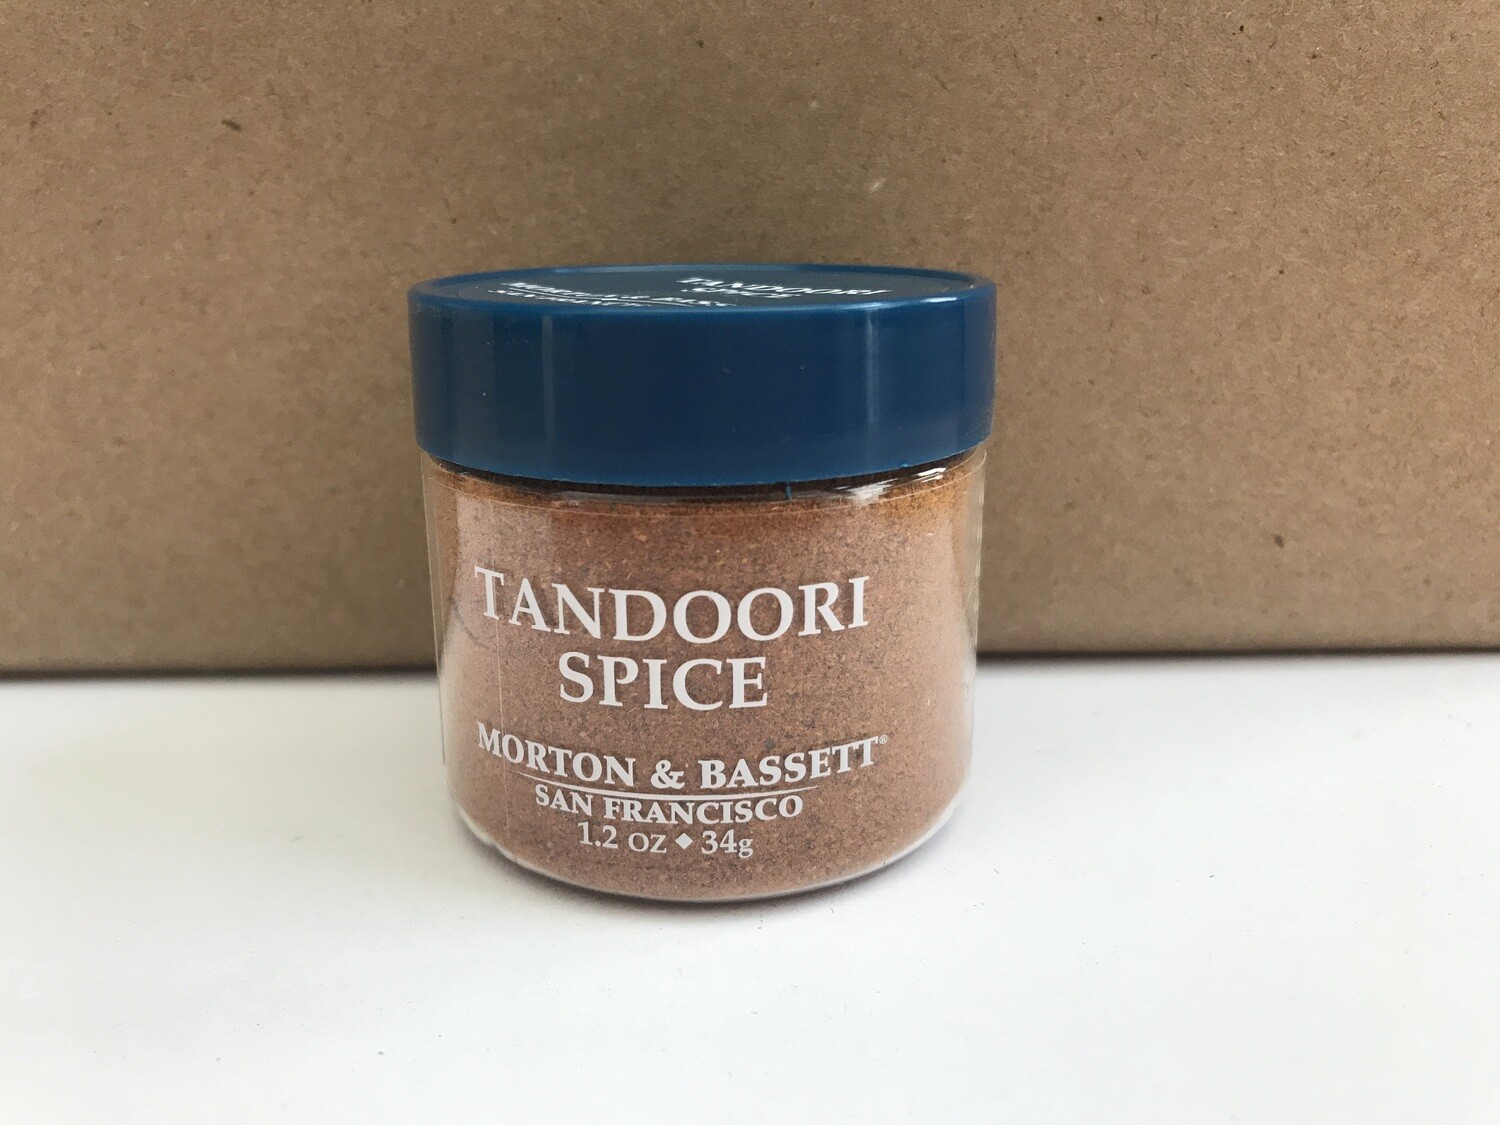 Grocery / Spice / Morton & Bassett Indian Tandoori Spice, 1.2 oz